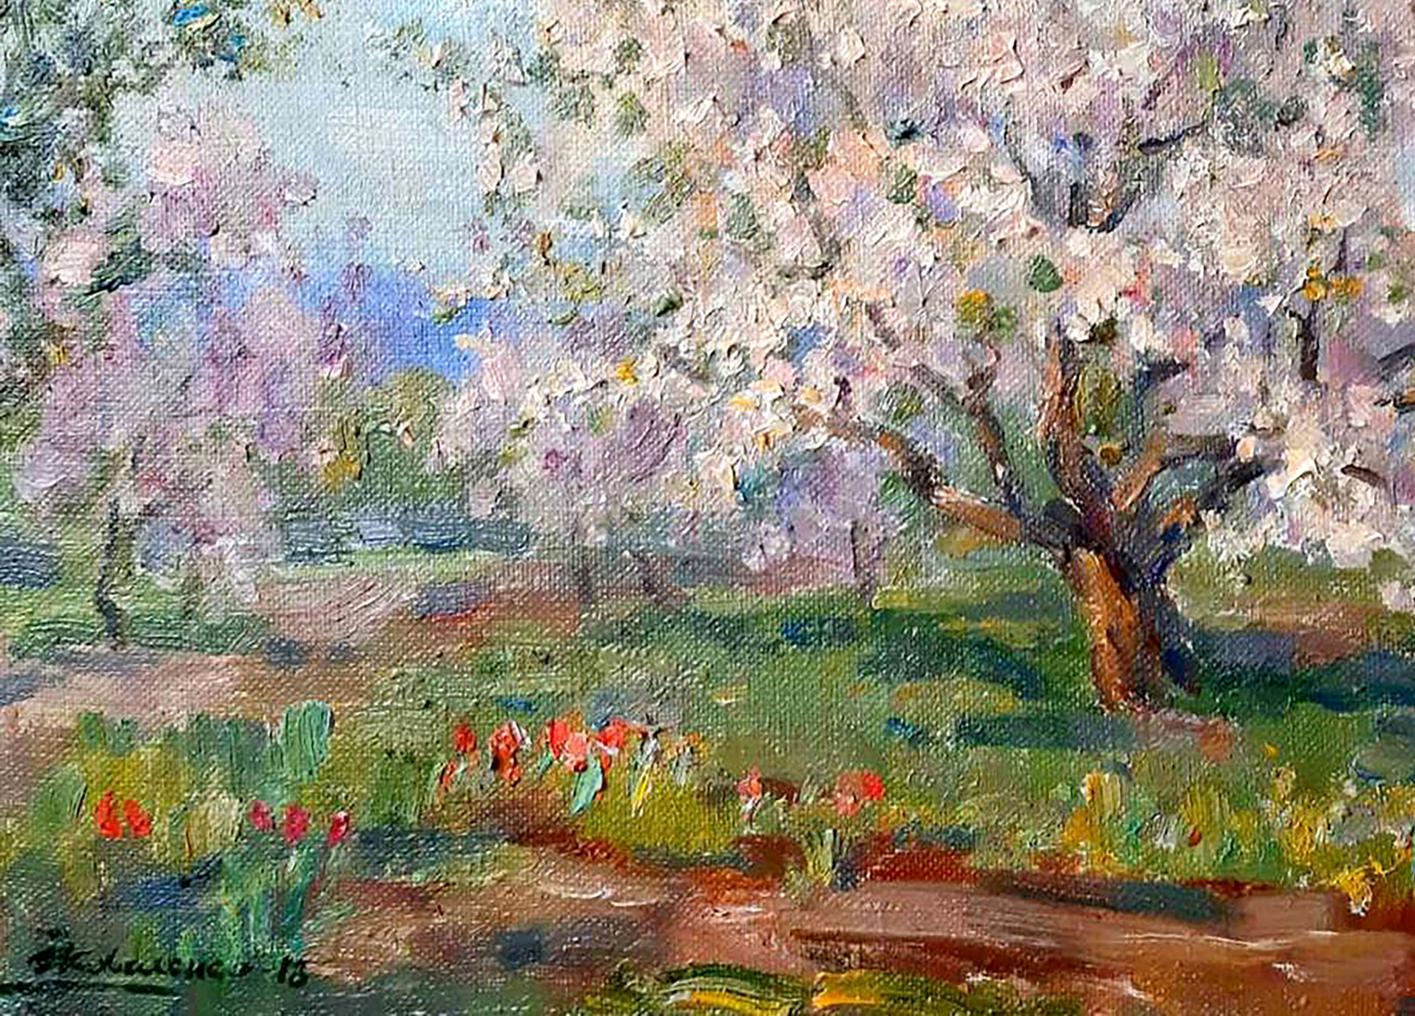 Oil painting Apricots bloom Kovalenko Ivan Mikhailovich